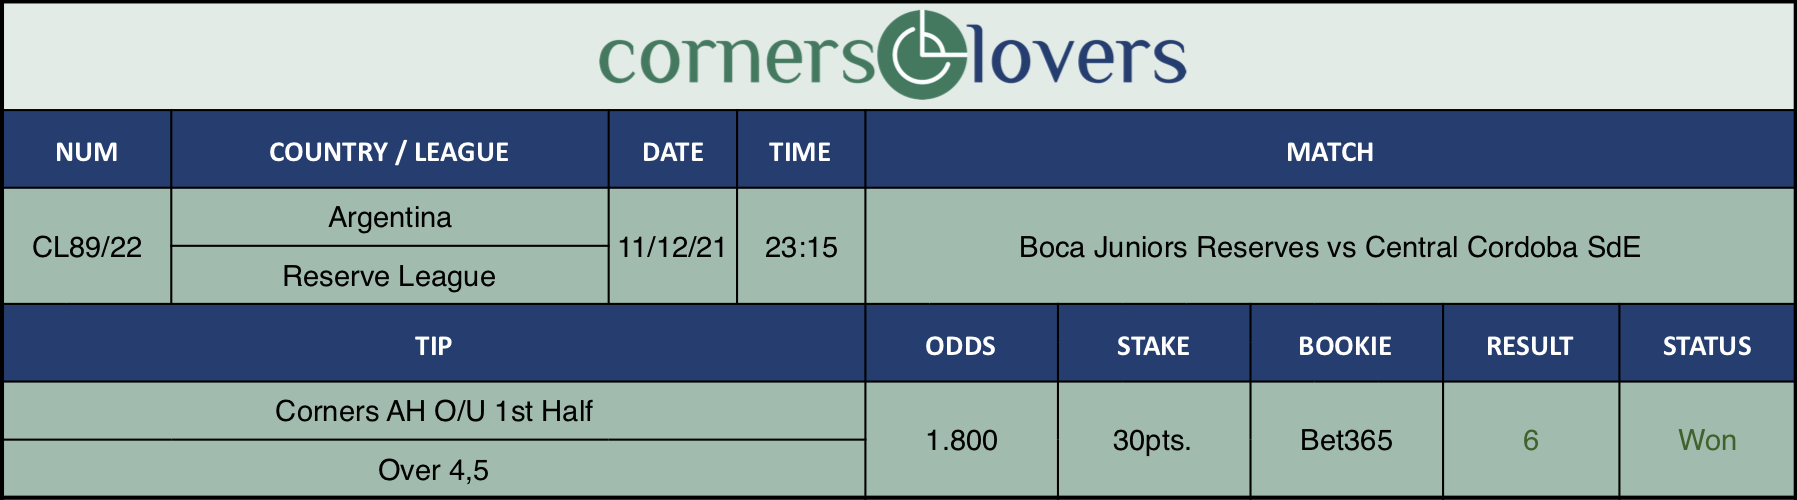 Resultados de nuestro consejo para el partido Boca Juniors Reserves vs Central Cordoba SdE en el que se recomienda Corners AH O/U 1st Half Over 4,5